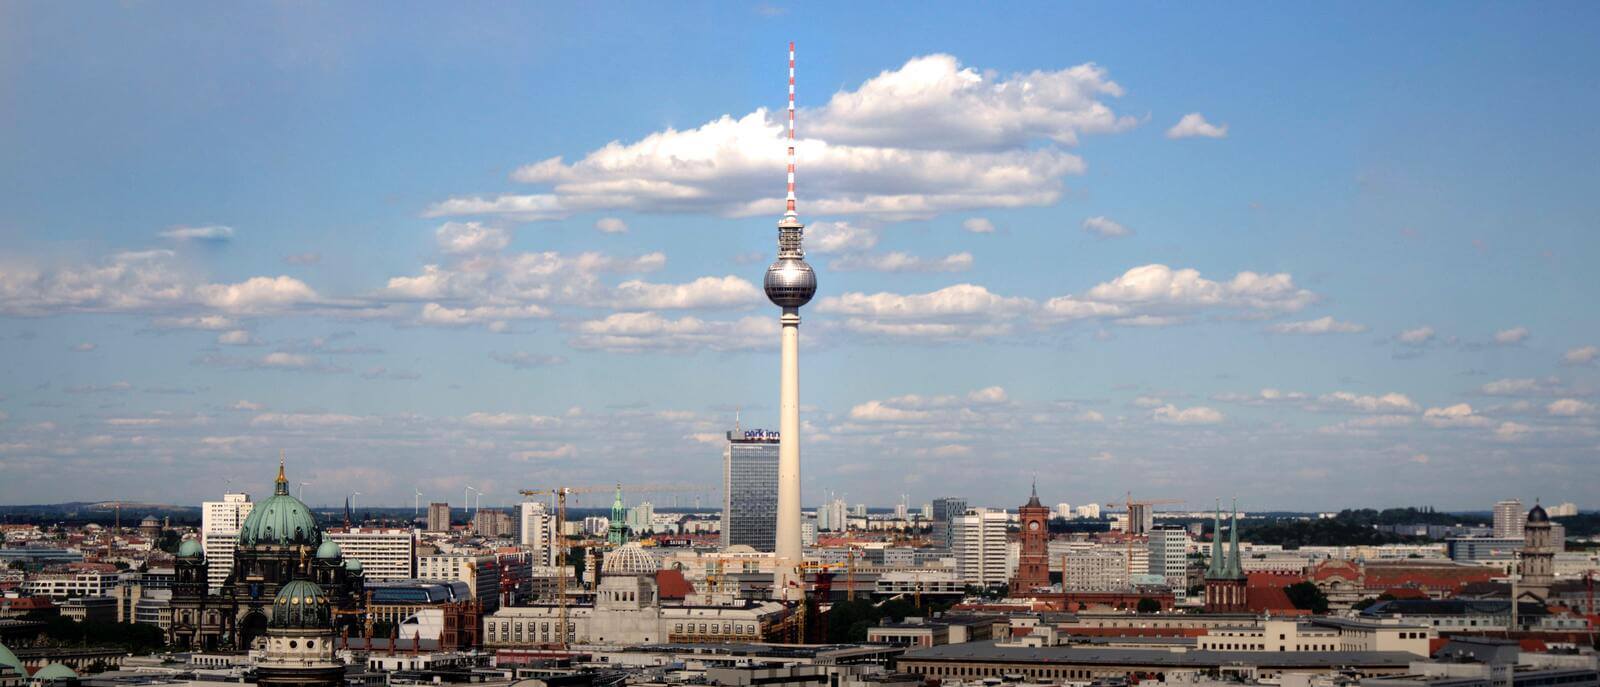 Jobs & Agenturen in Berlin | JobSuite